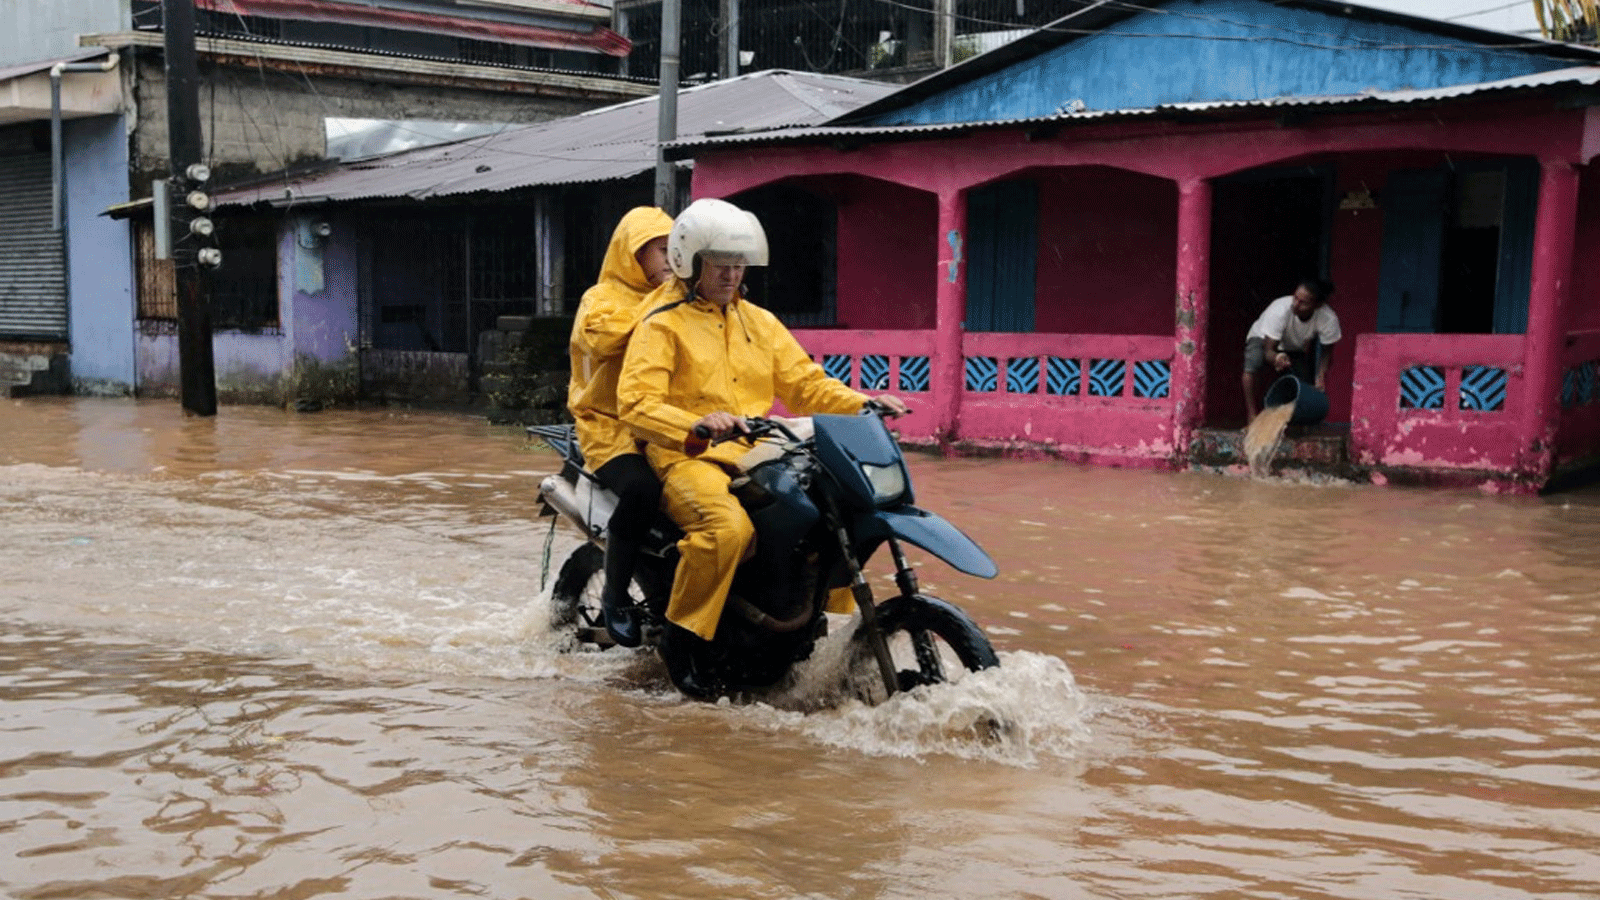 سكان يركبون دراجة نارية في شارع غمرته المياه بعد مرور إعصار جوليا في بلدة بلوفيلدز، على الساحل الكاريبي لنيكاراغوا في 9 تشرين الأول\أكتوبر 2022